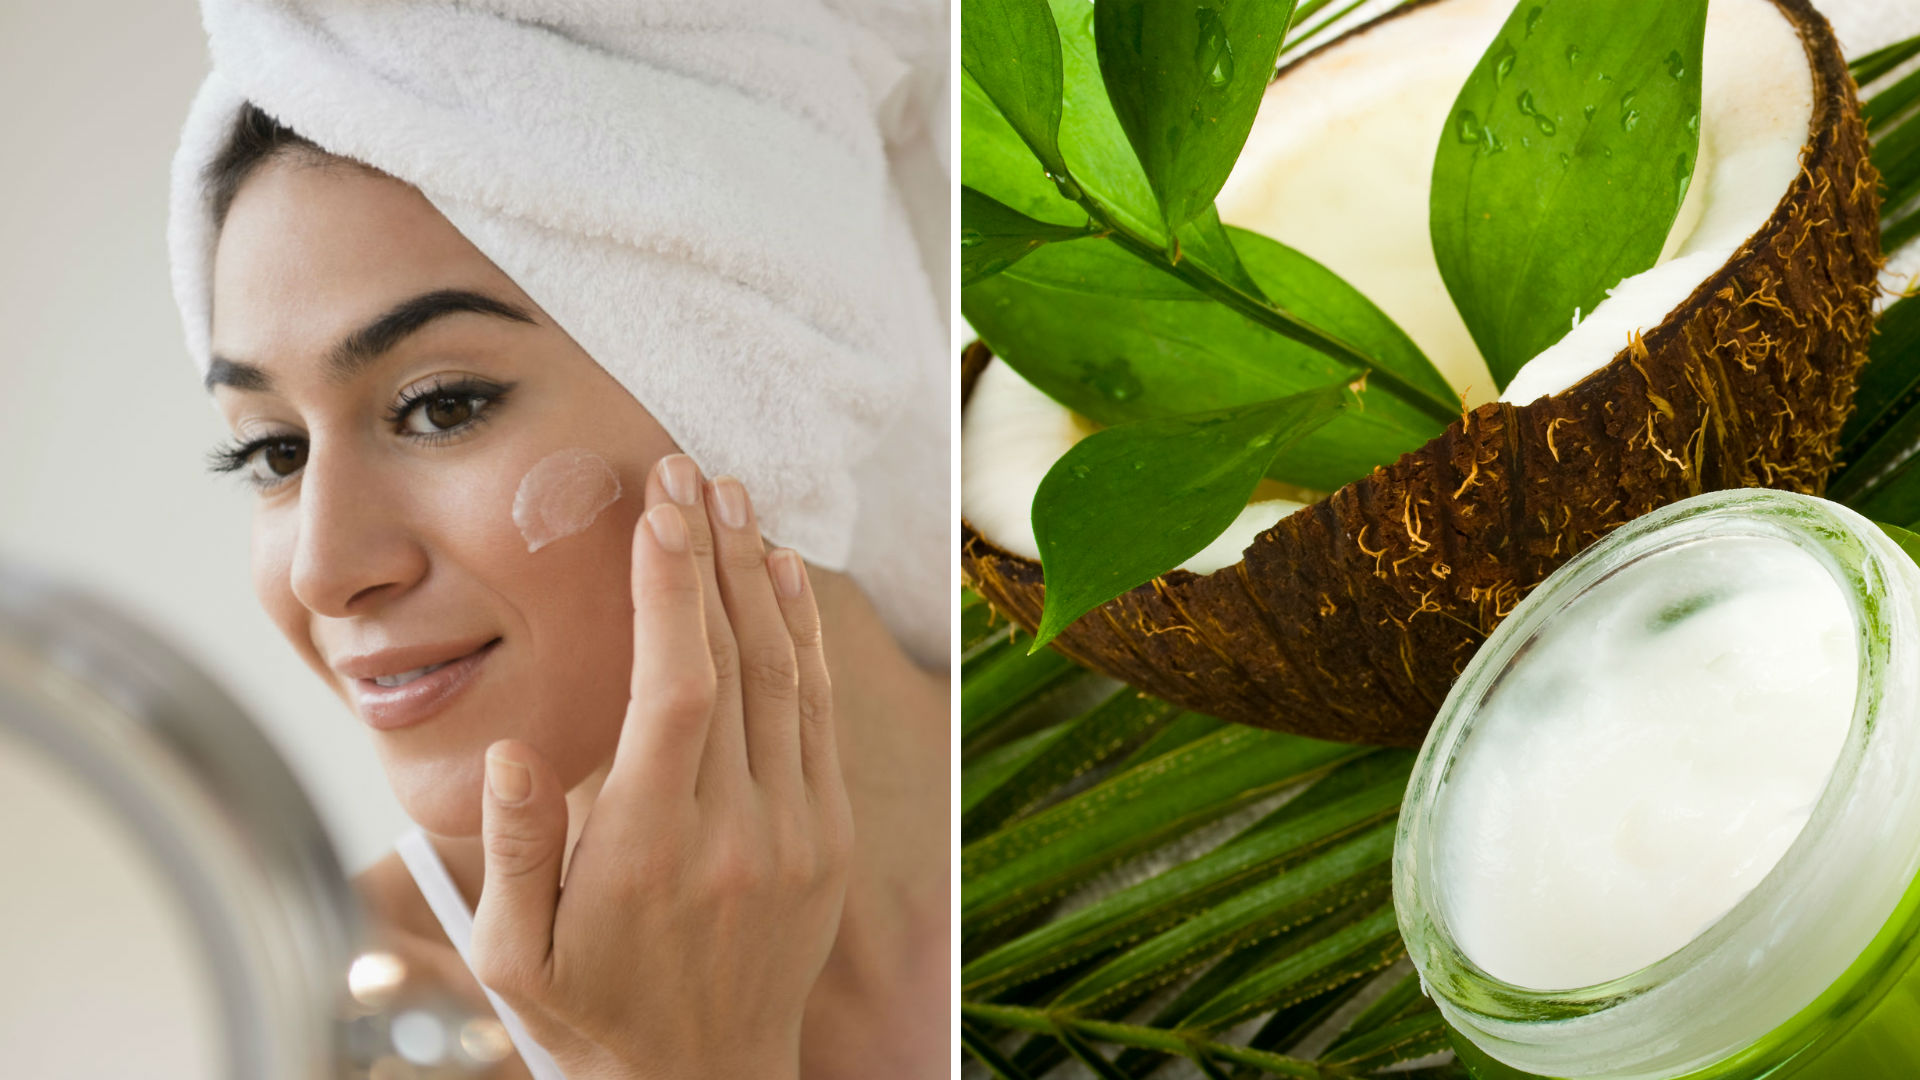 usar aceite de coco en cara porque daña tu piel, según los expertos